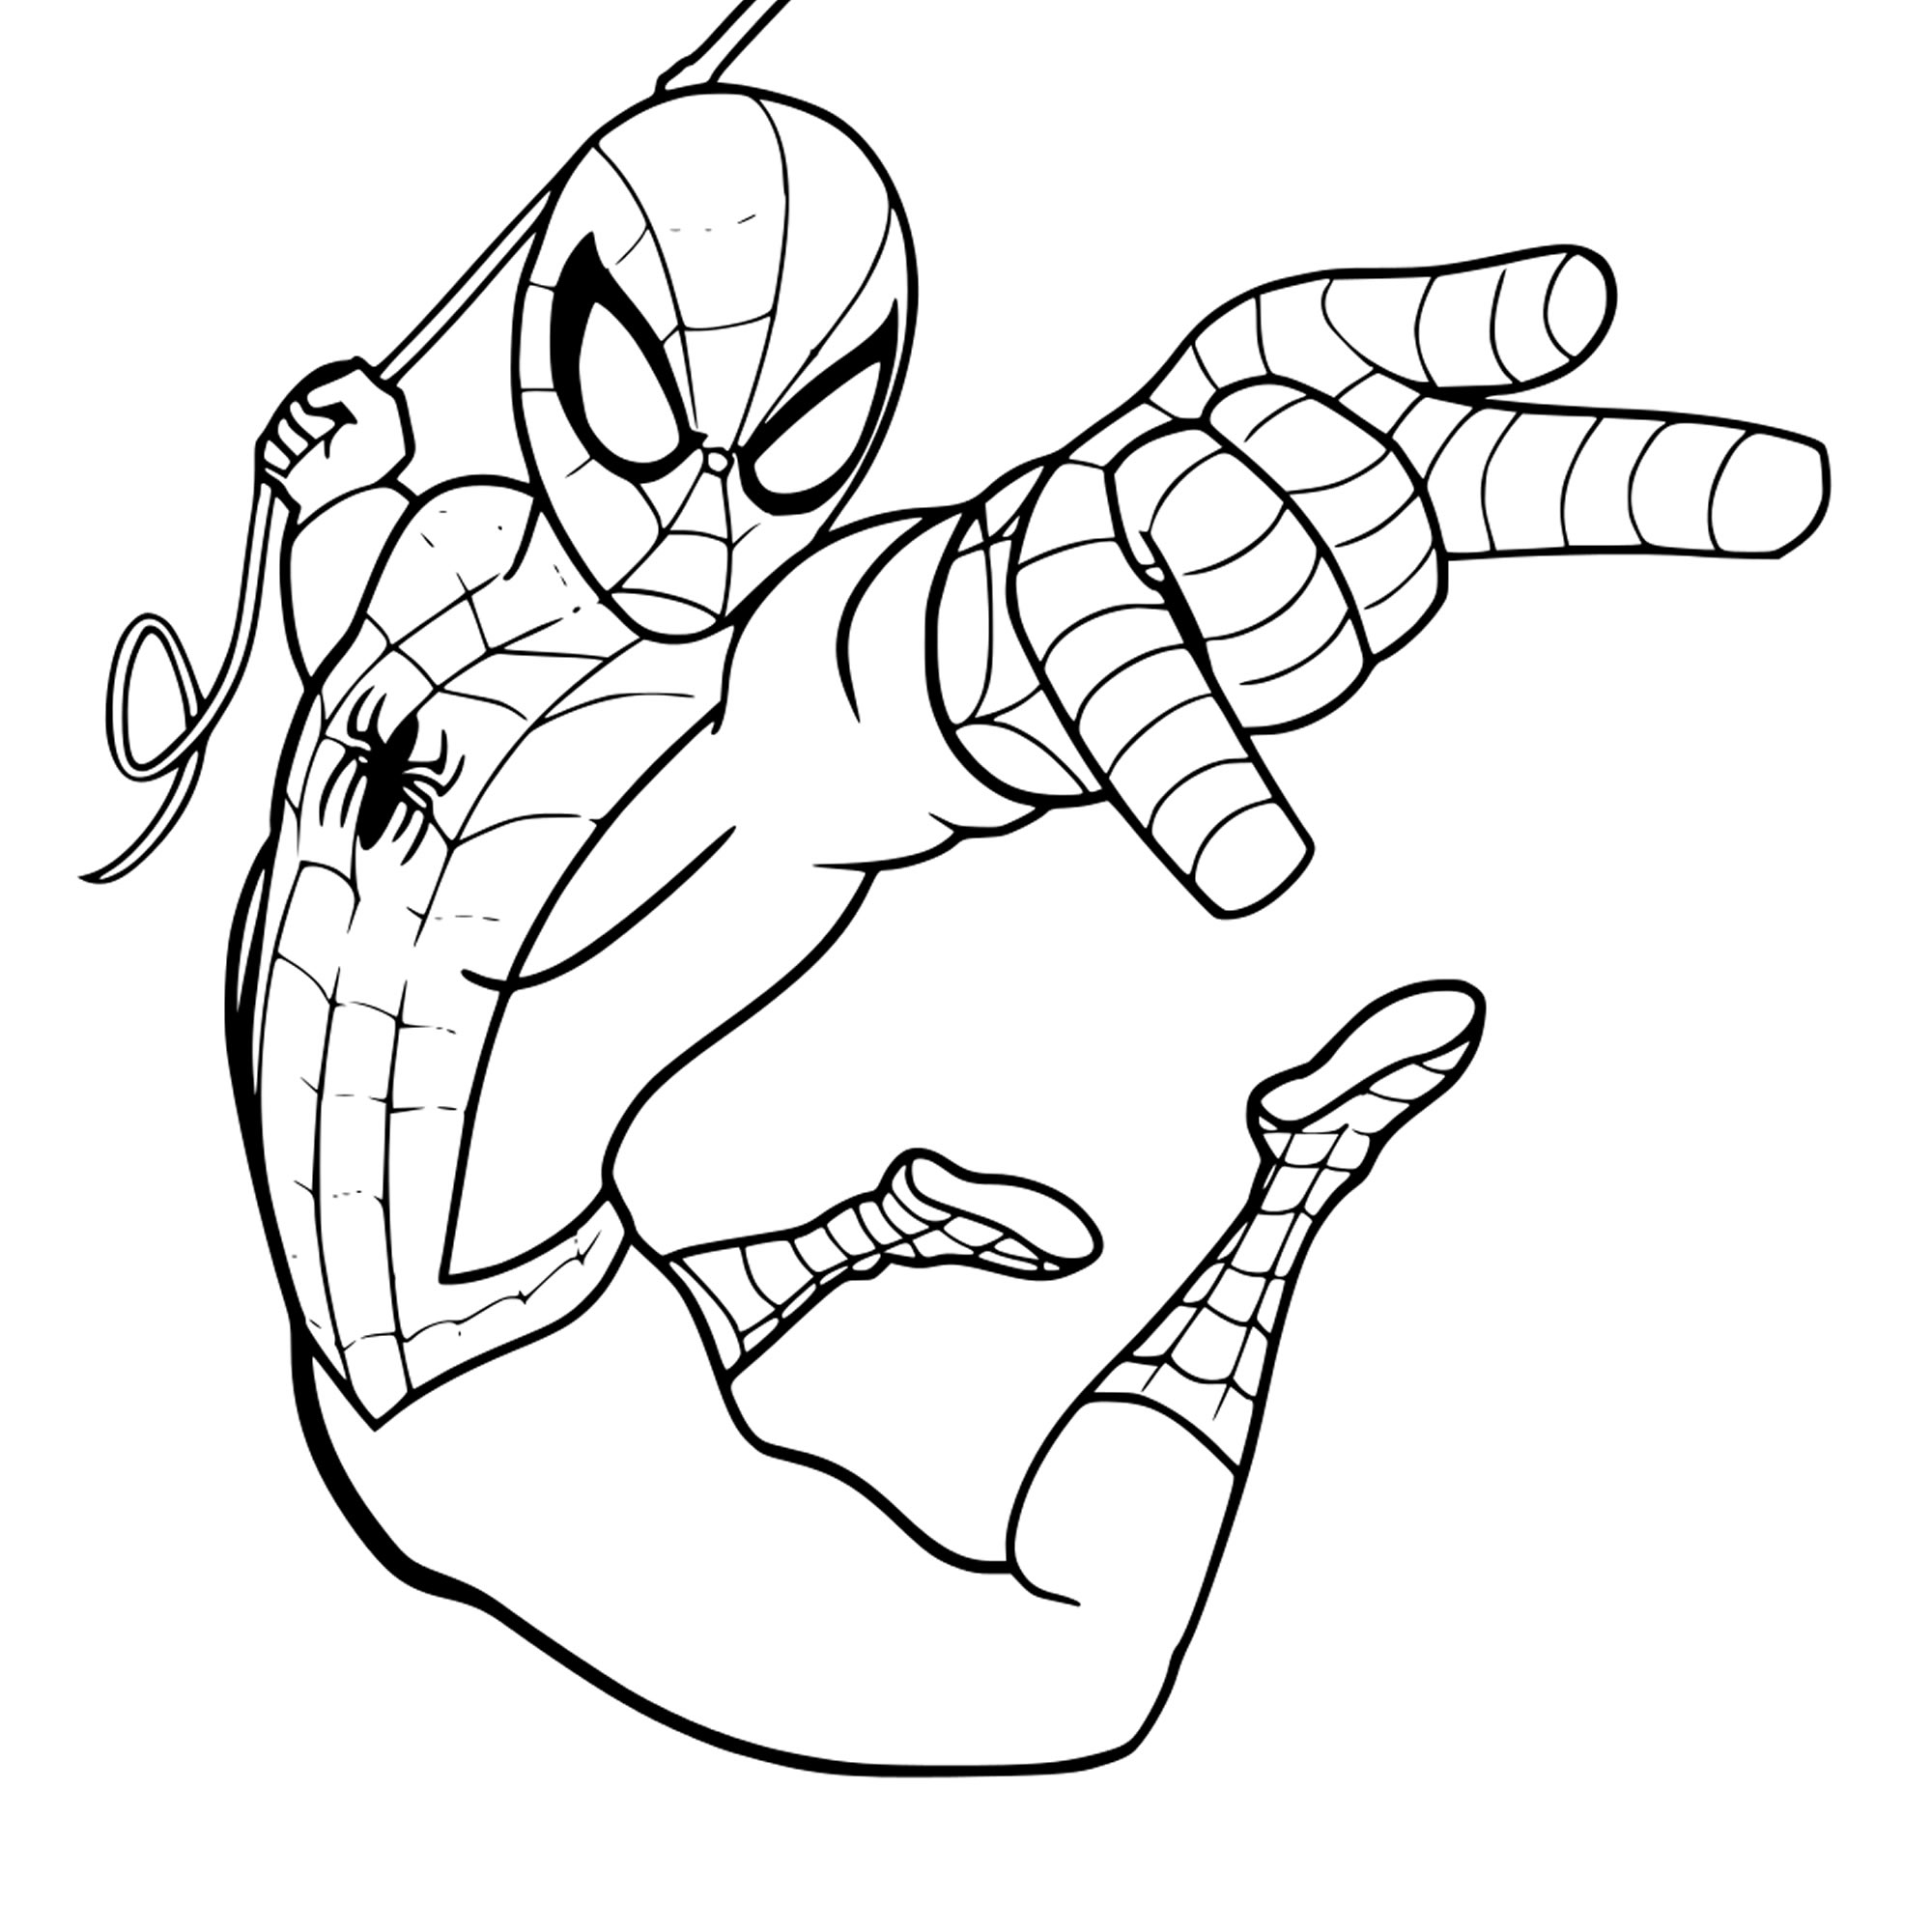 Скачать и распечатать в хорошем качестве раскраску Человек паук в прыжке дл...